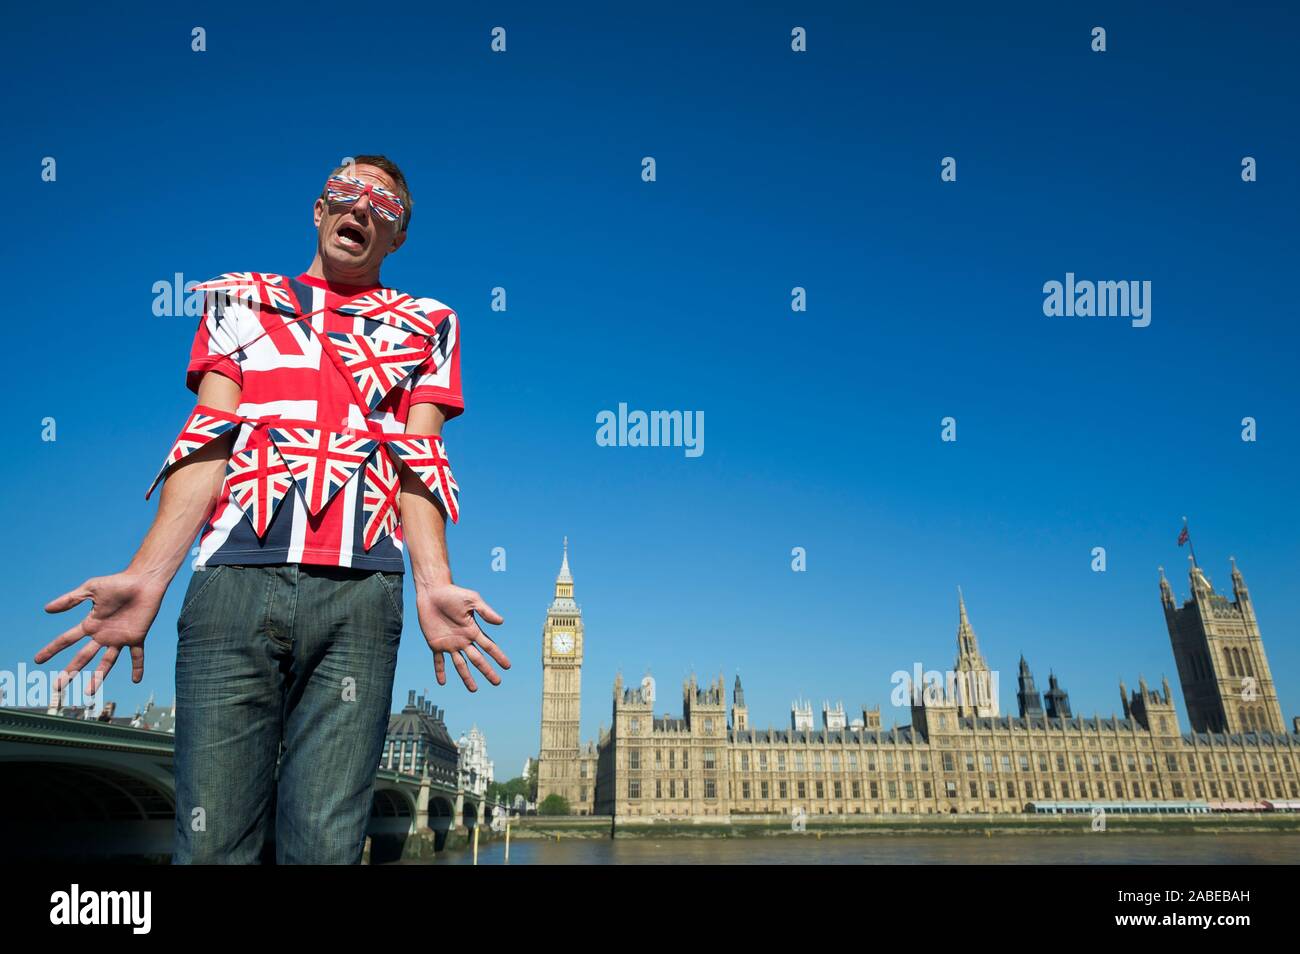 La confus enchevêtré dans l'homme Union Jack colorés bunting debout devant les toits de la ville de Westminster, London, UK Banque D'Images